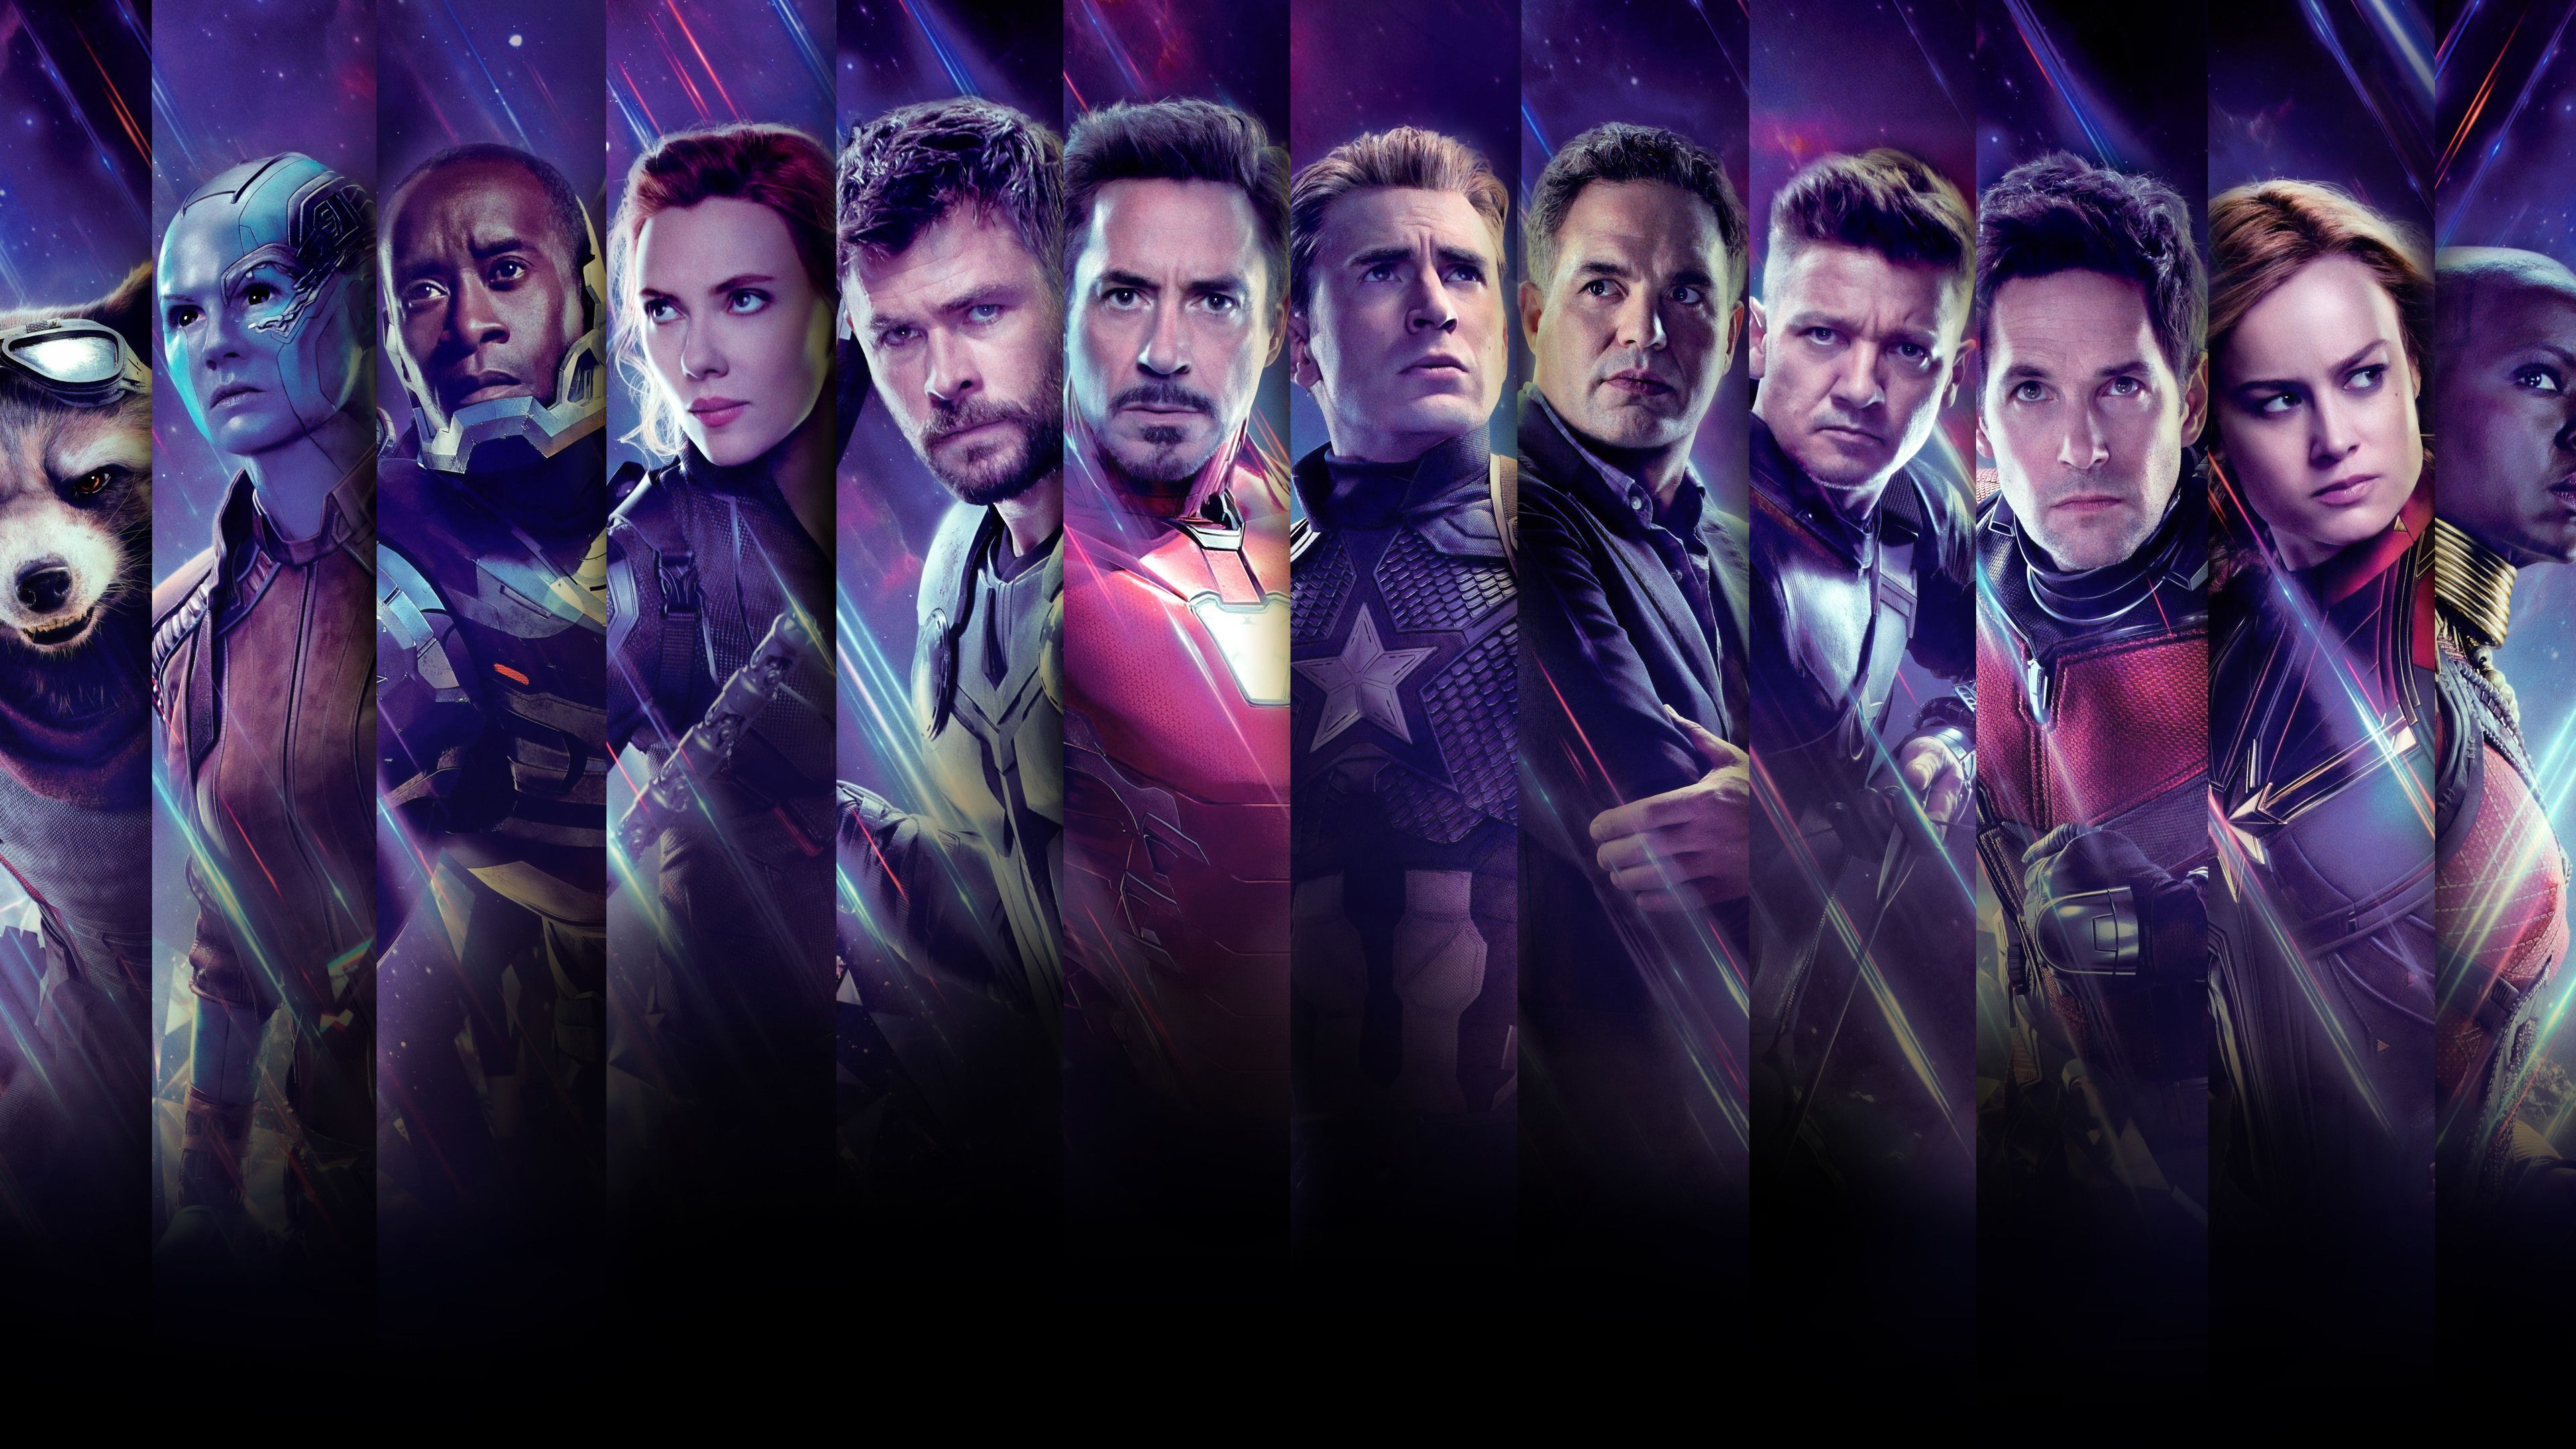 Avengers End Game Collage Poster 4k War Machine Wallpaper, Thor Wallpaper, Thanos Wallpaper, Superheroes Wal. Captain America Wallpaper, Okoye Marvel, Avengers